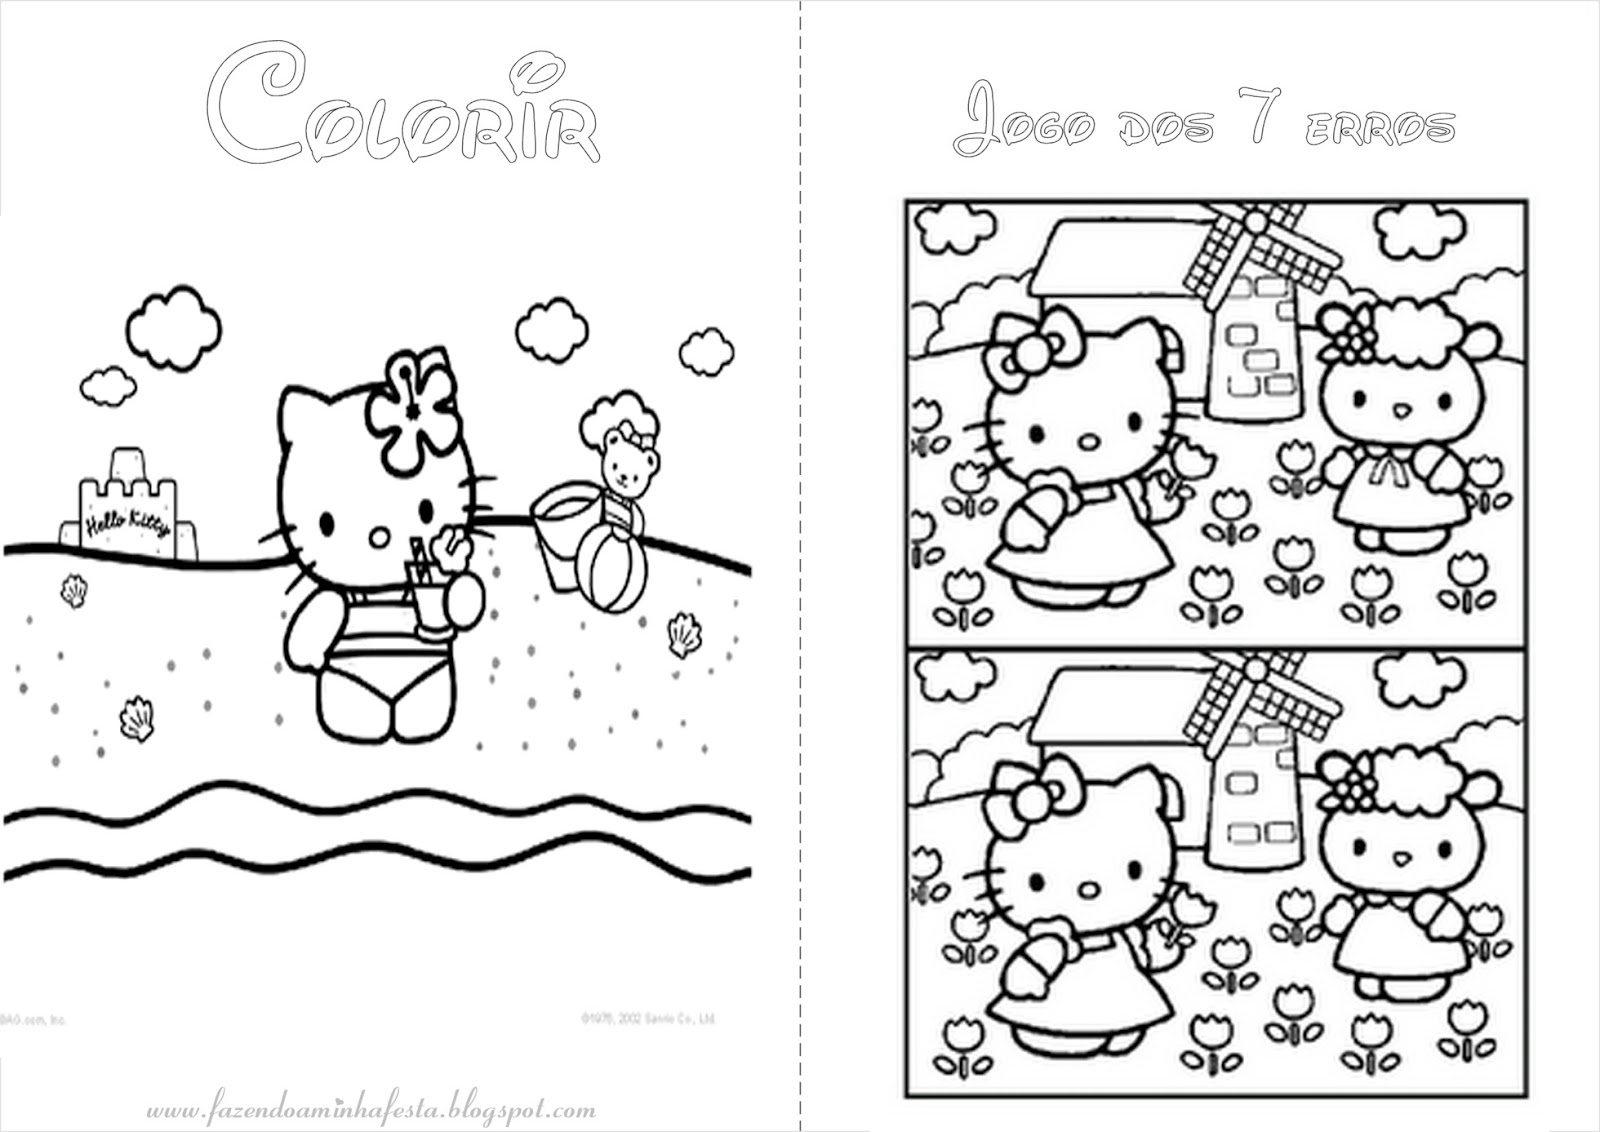 Hello Kitty. Livro de Colorir e Atividades